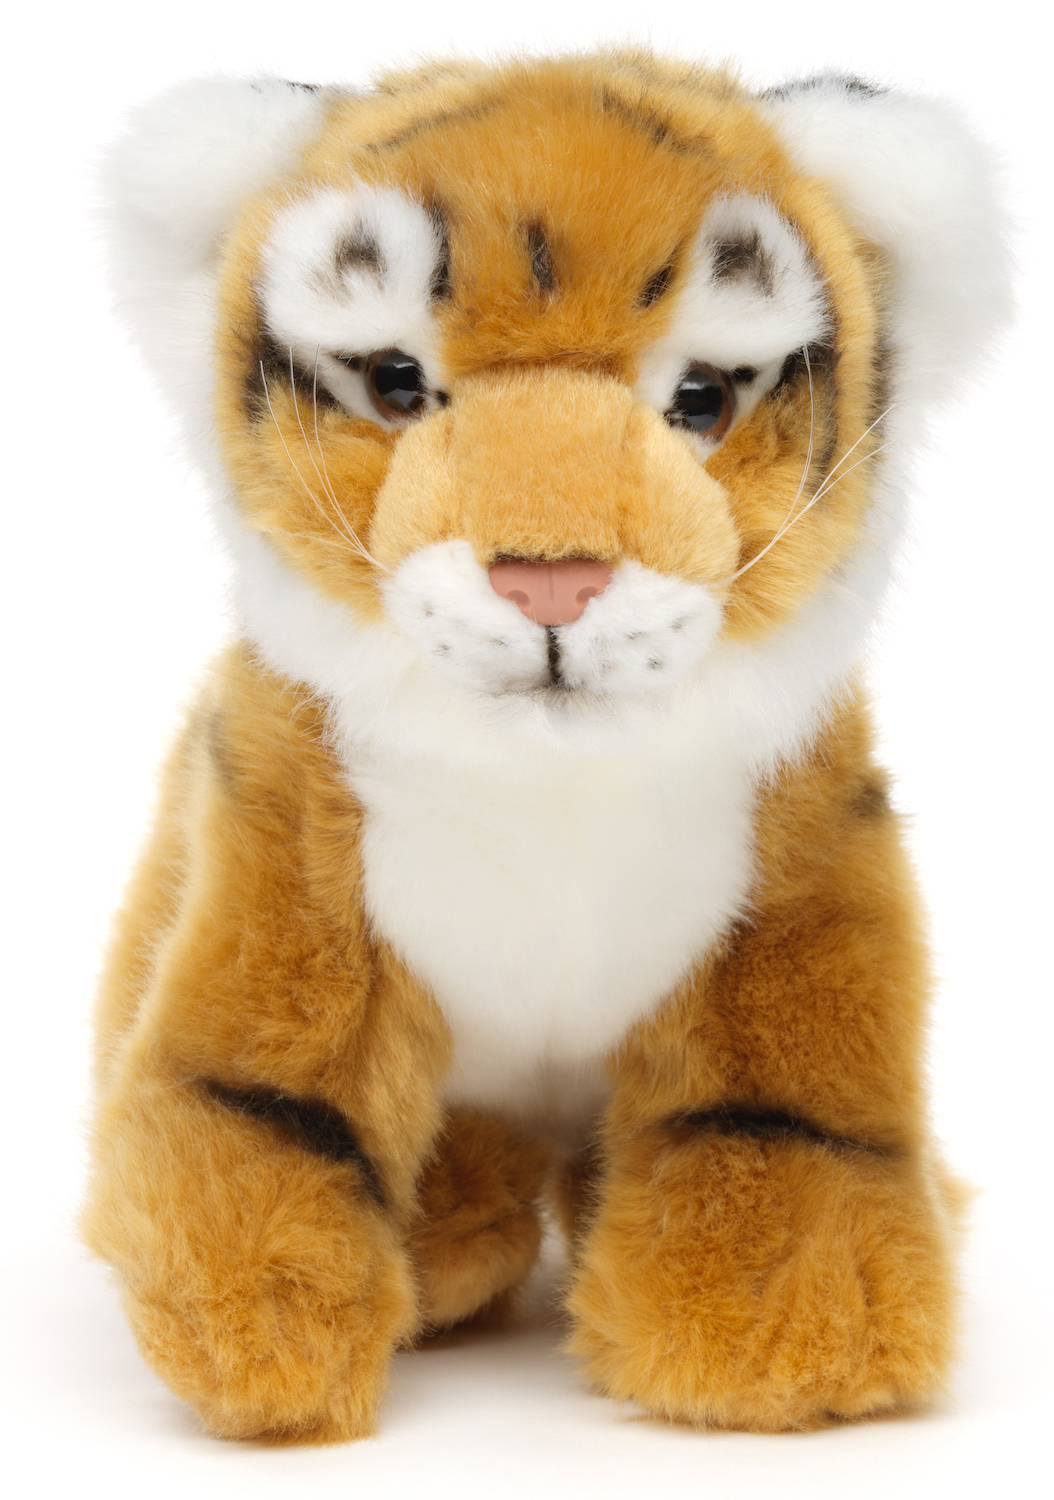 Tiger Baby, sitzend - 24 cm (Länge) - Plüschtier, Kuscheltier